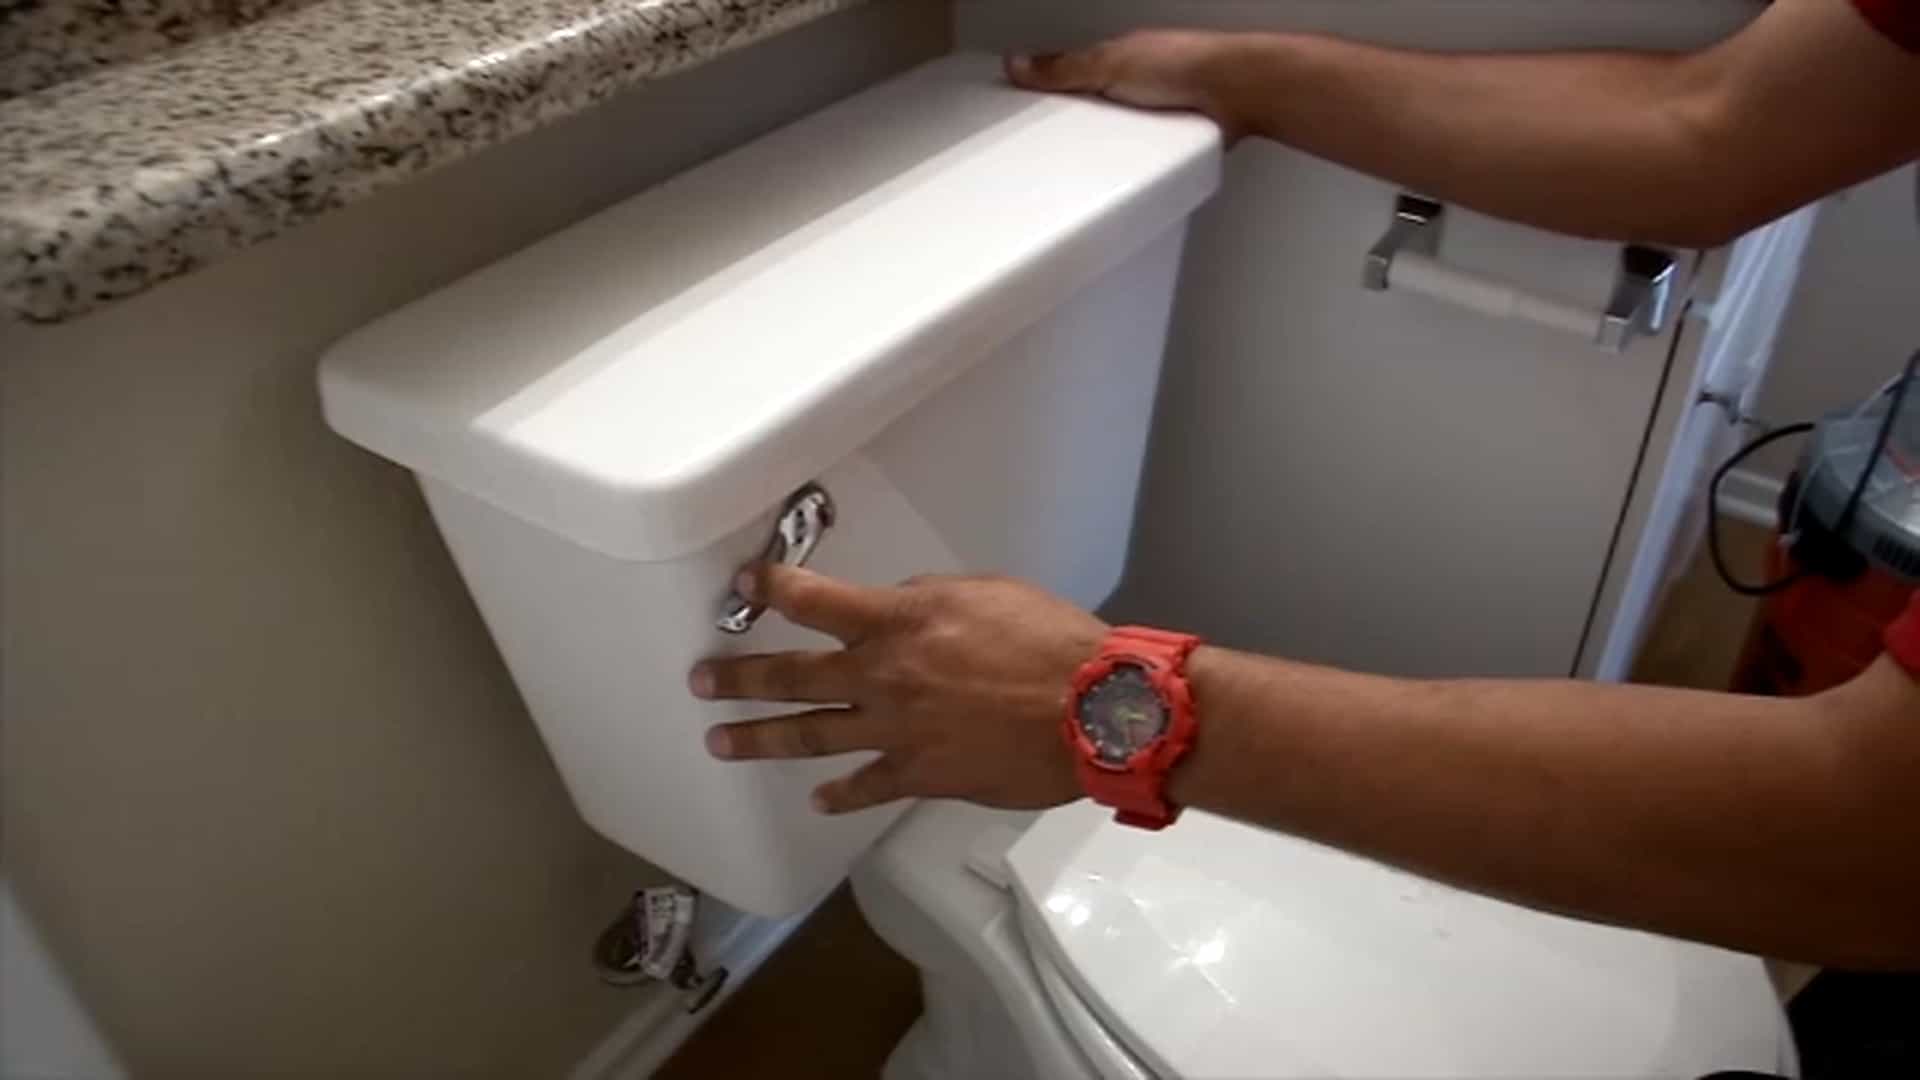 Flush the toilet carefully